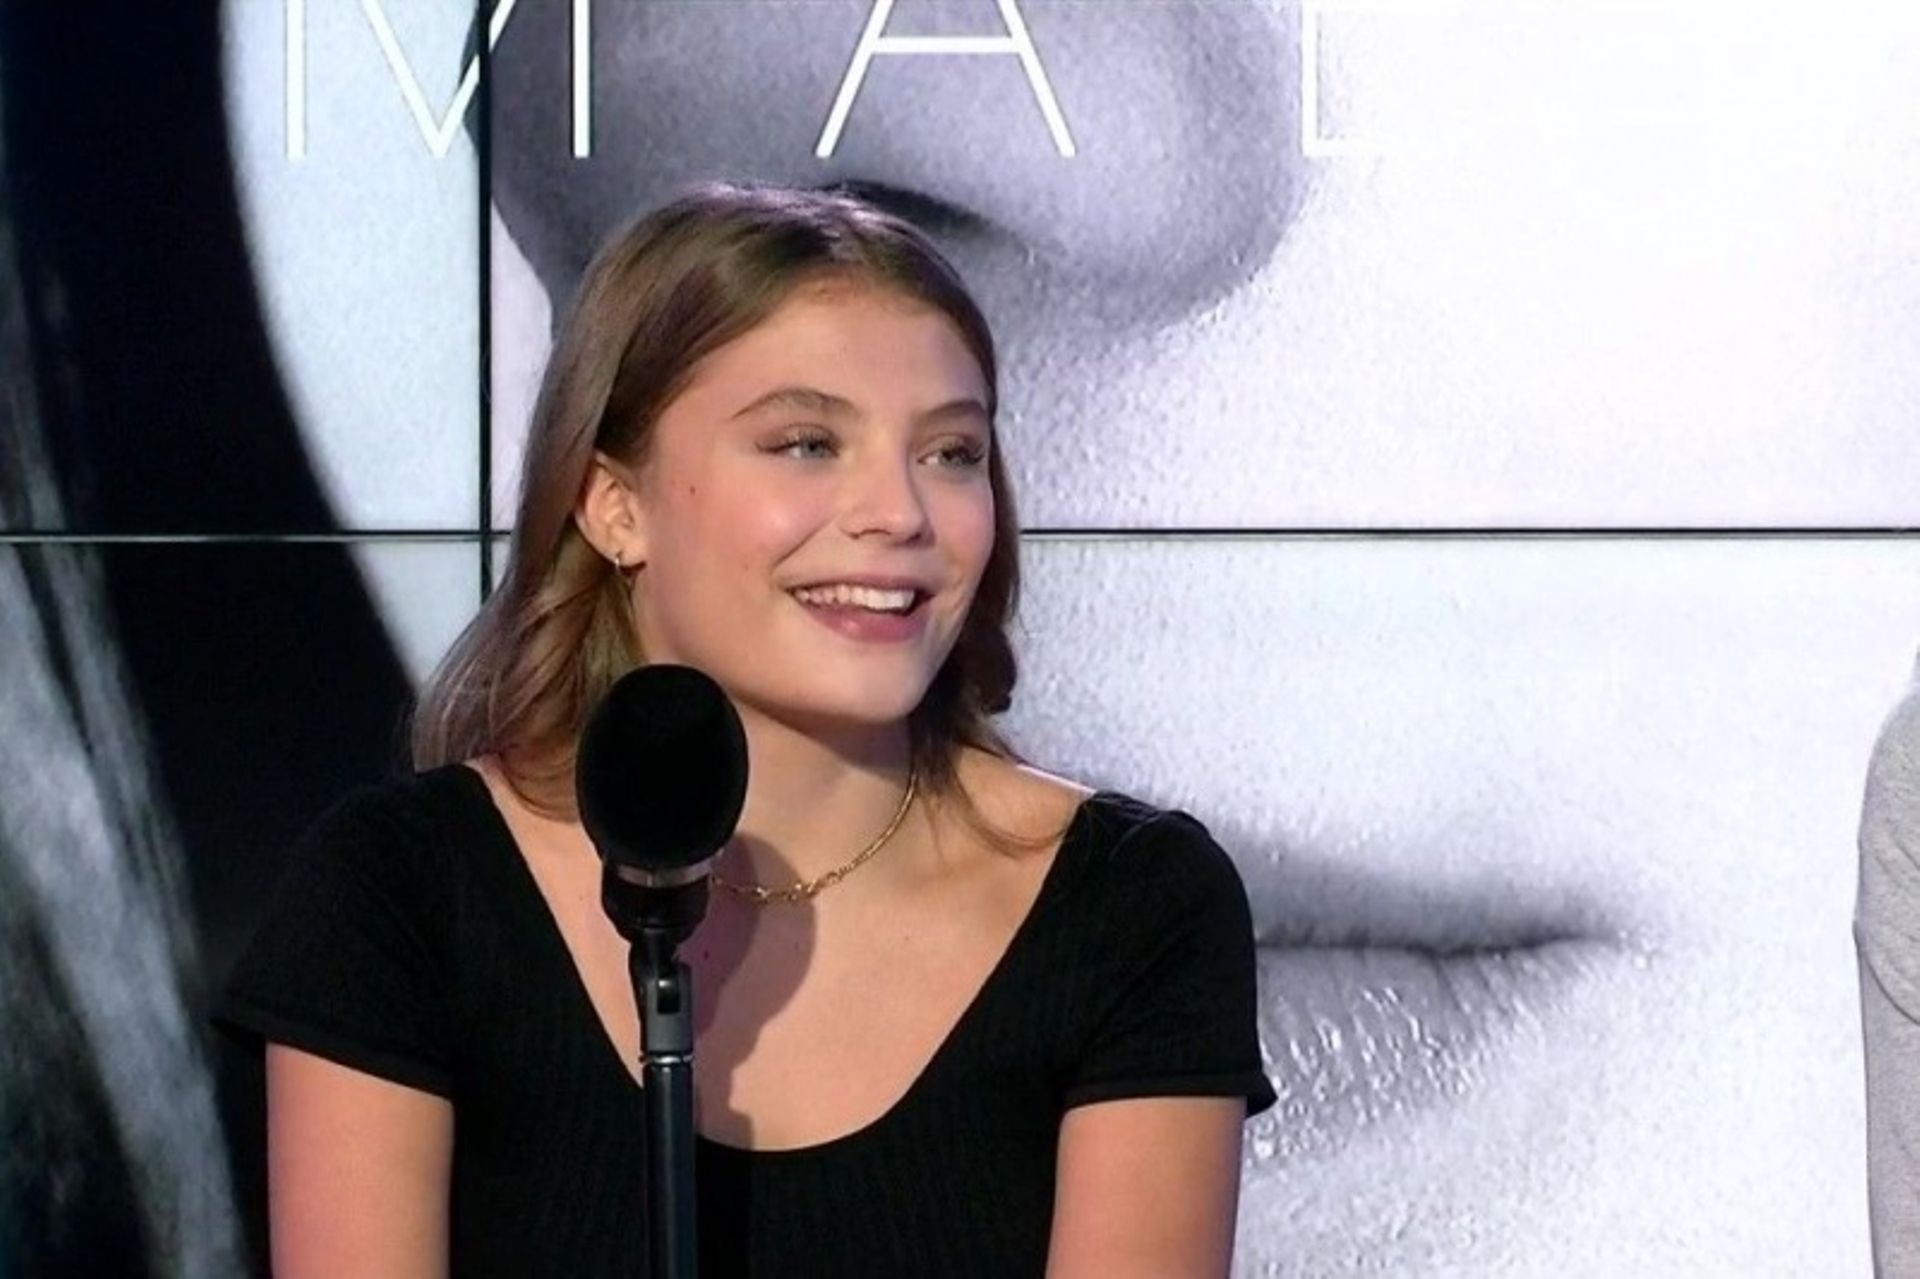 Maëlle, gagnante de "The Voice France", sort son premier album